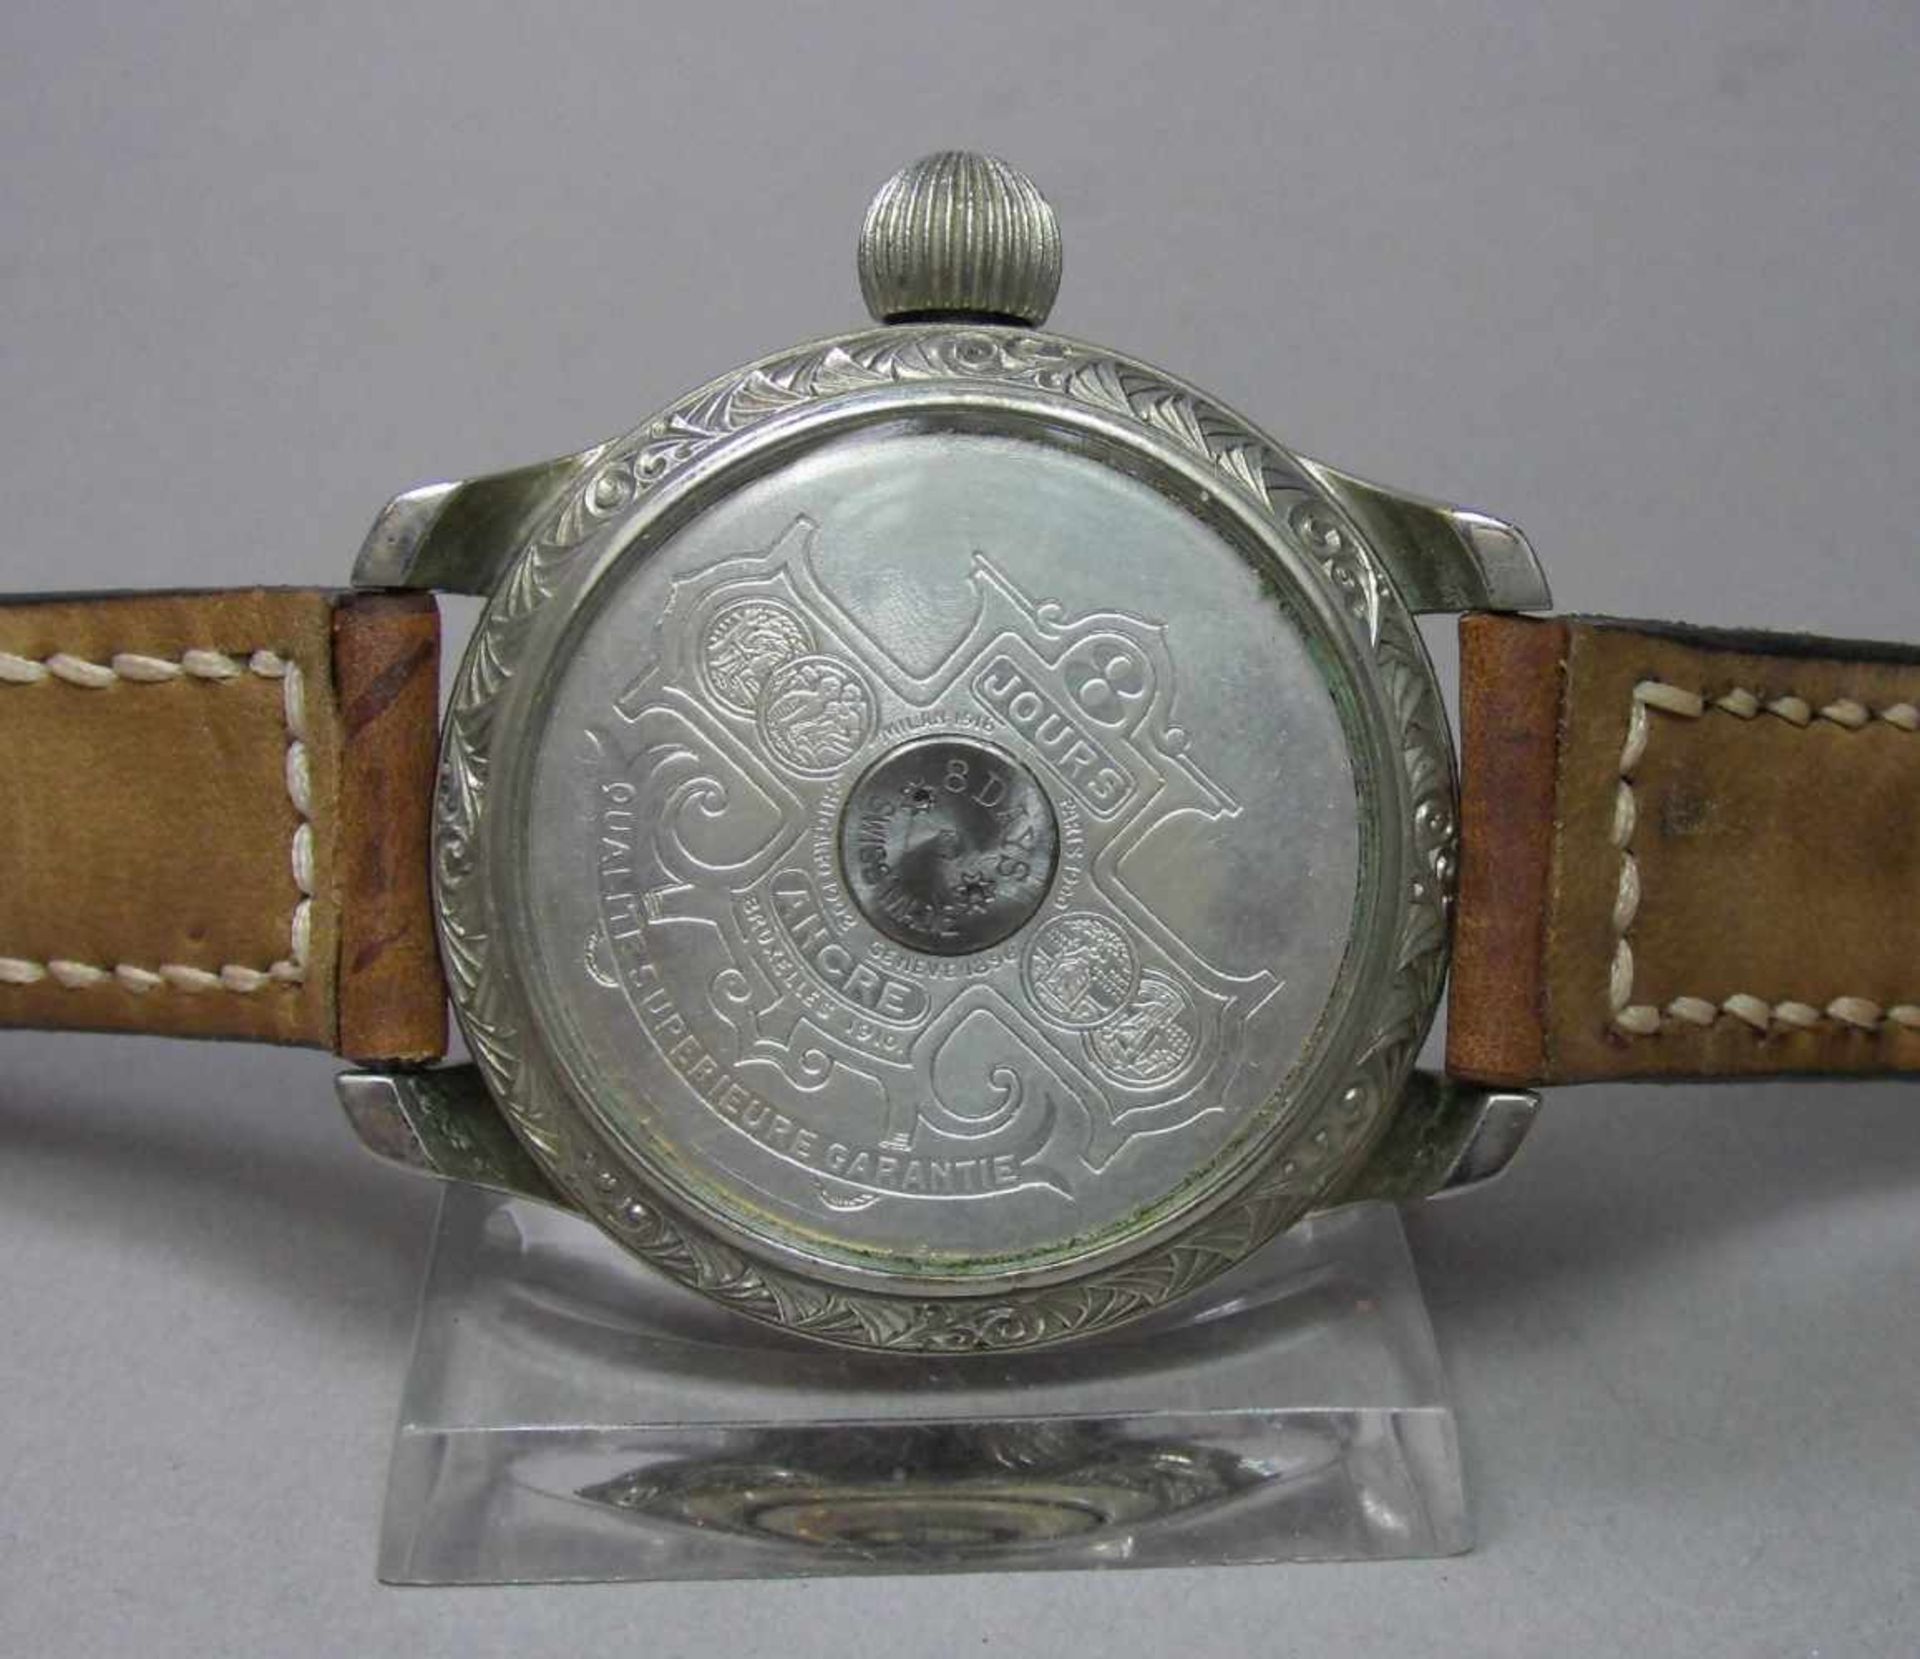 ARMBANDUHR, gearbeitet aus einer Taschenuhr / Mariage / wristwatch, 20. Jh., Handaufzug (Krone). - Image 6 of 7